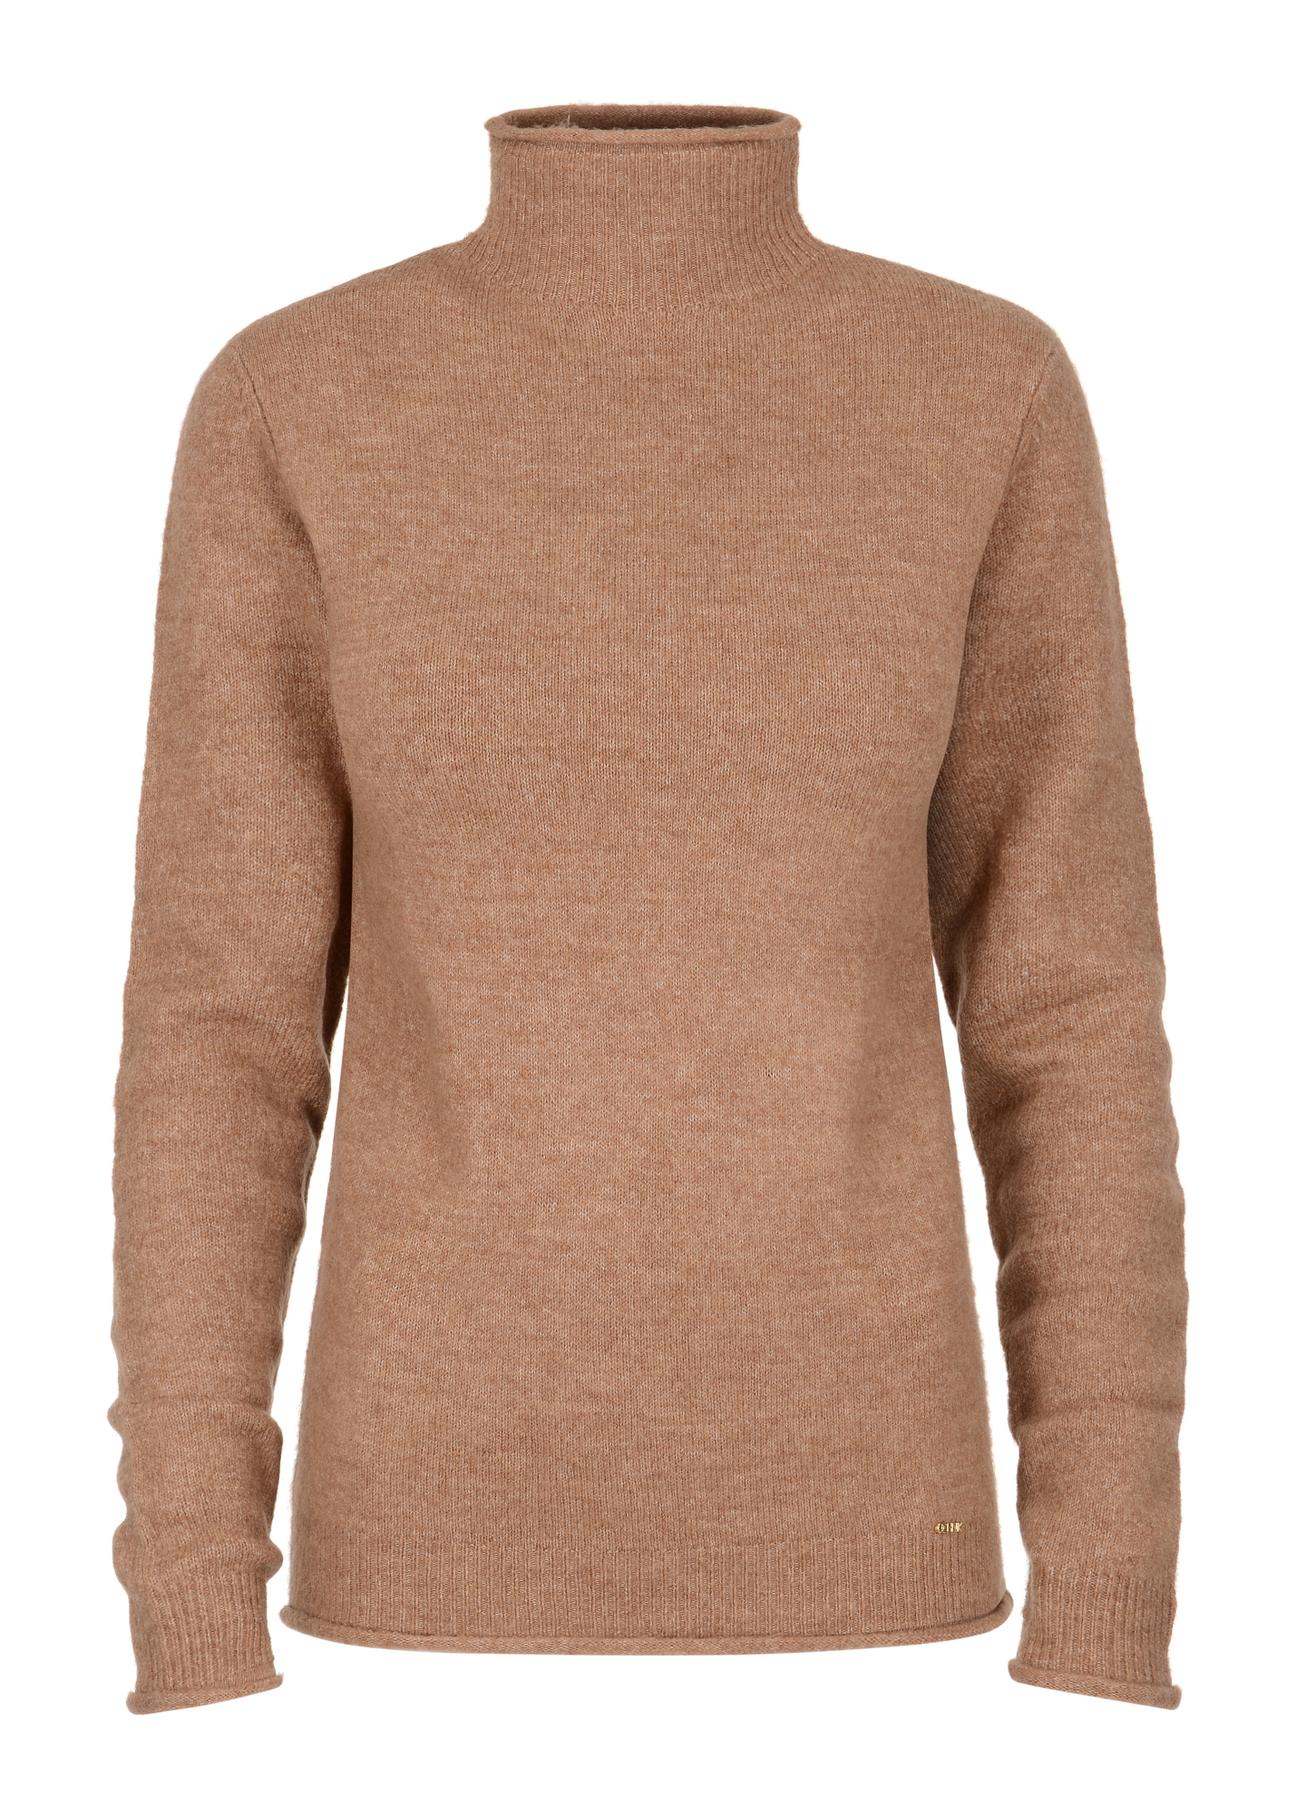 Jasnobrązowy sweter damski SWEDT-0164-34(Z23)